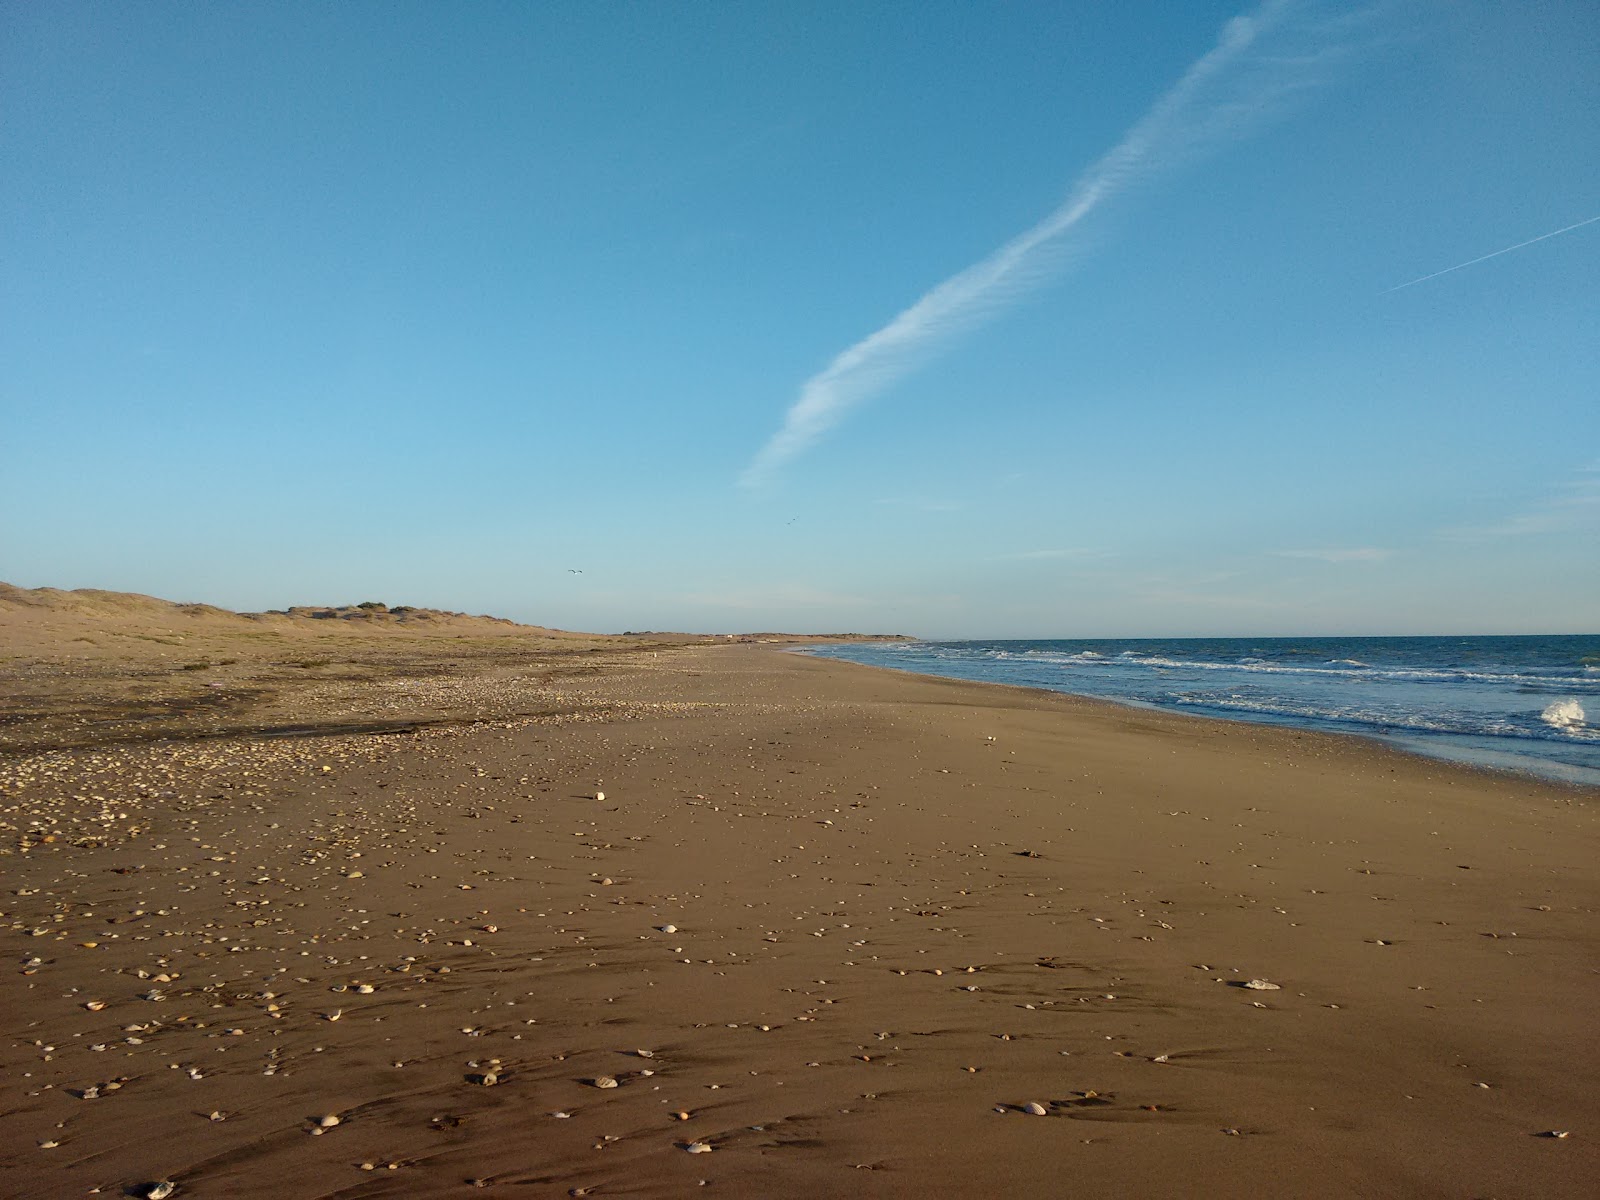 Zdjęcie El Siaric beach z powierzchnią szary piasek